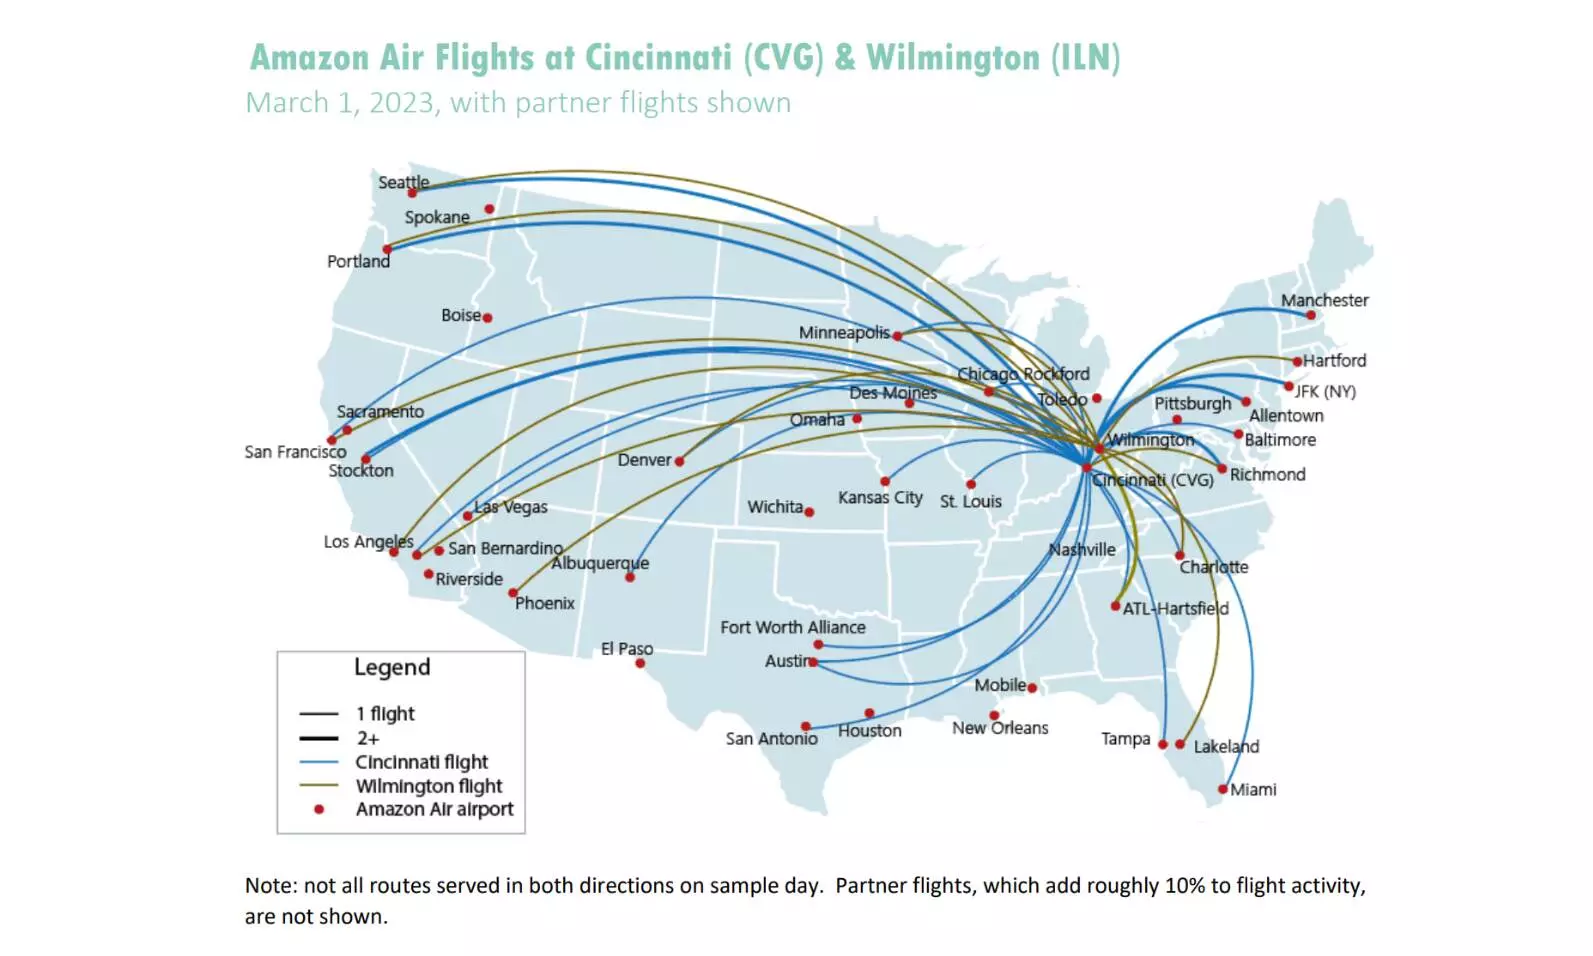 Amazon Air expanding at CVG, consolidating US activity at 4 hubs